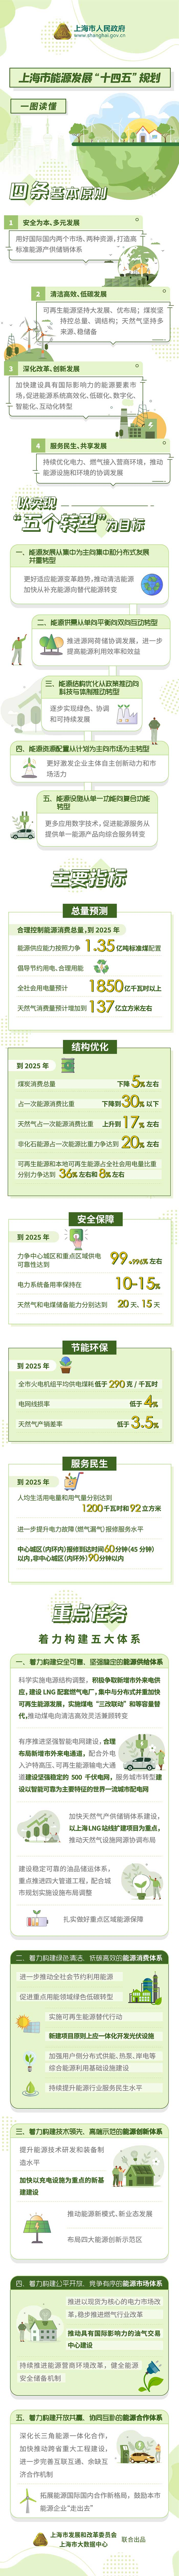 上海市能源发展十四五规划